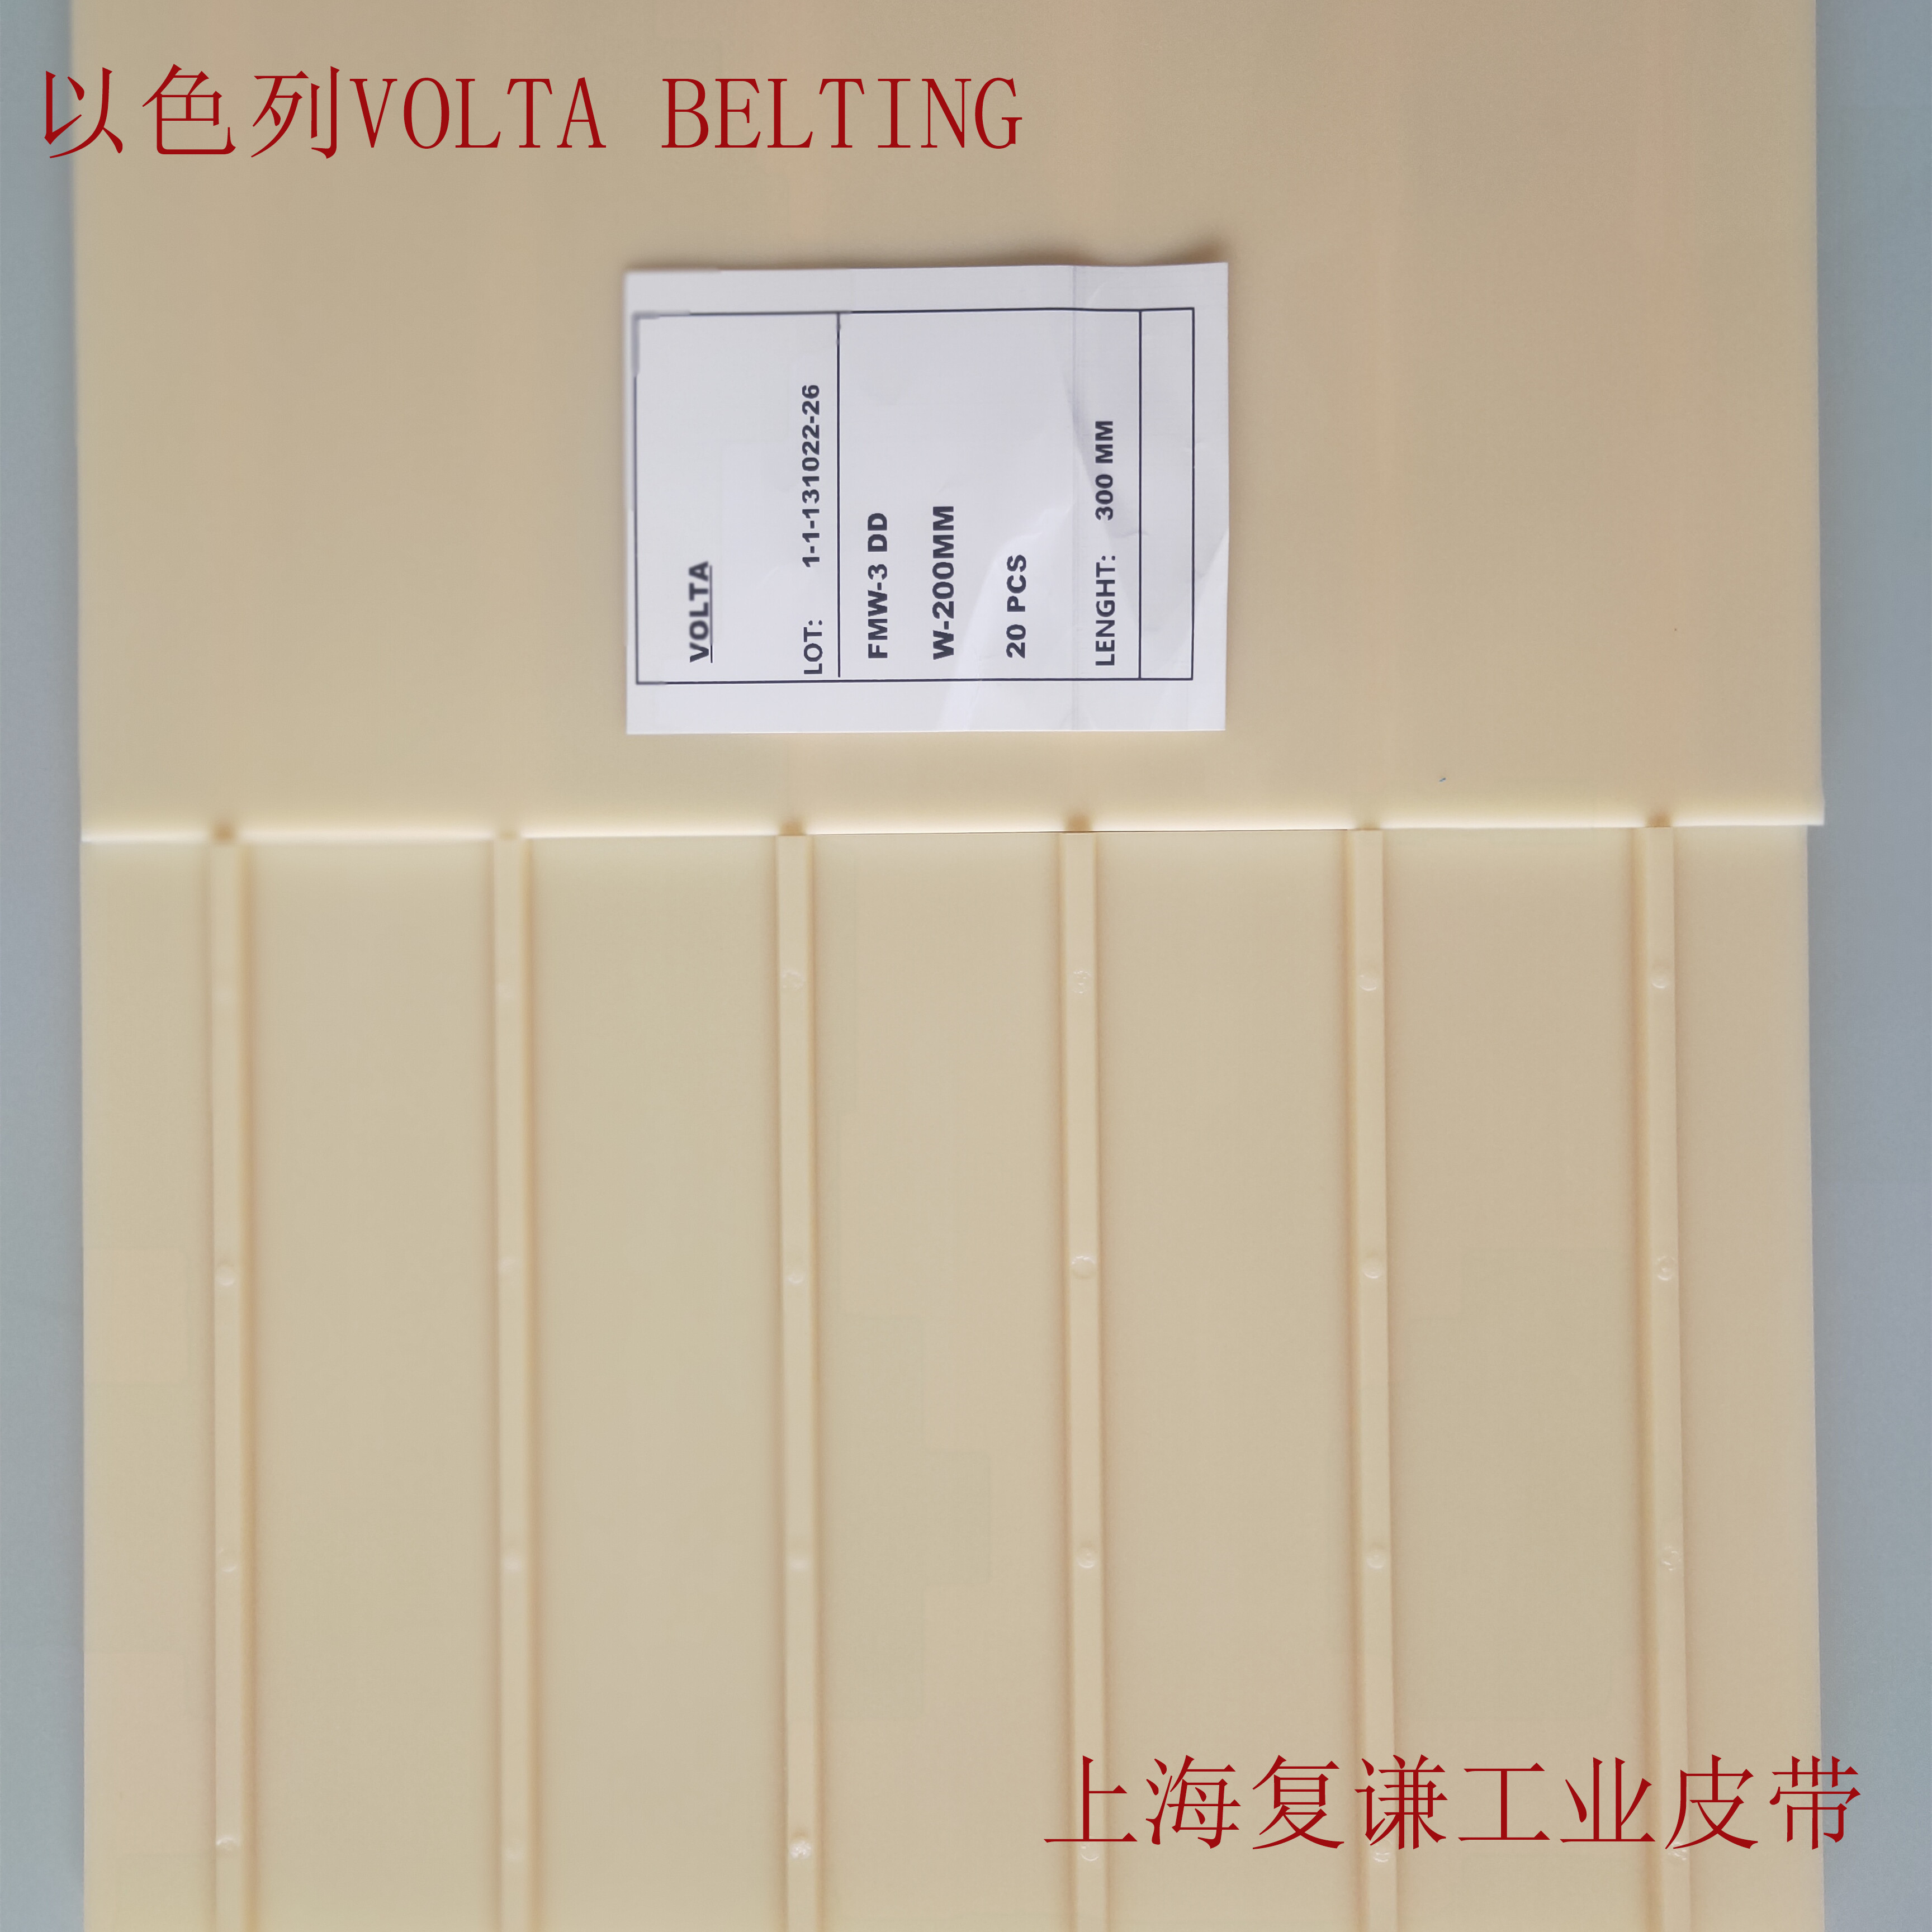 Volta Belting _ Belting Technology_filesIMG20201107094622_副本_副本.jpg